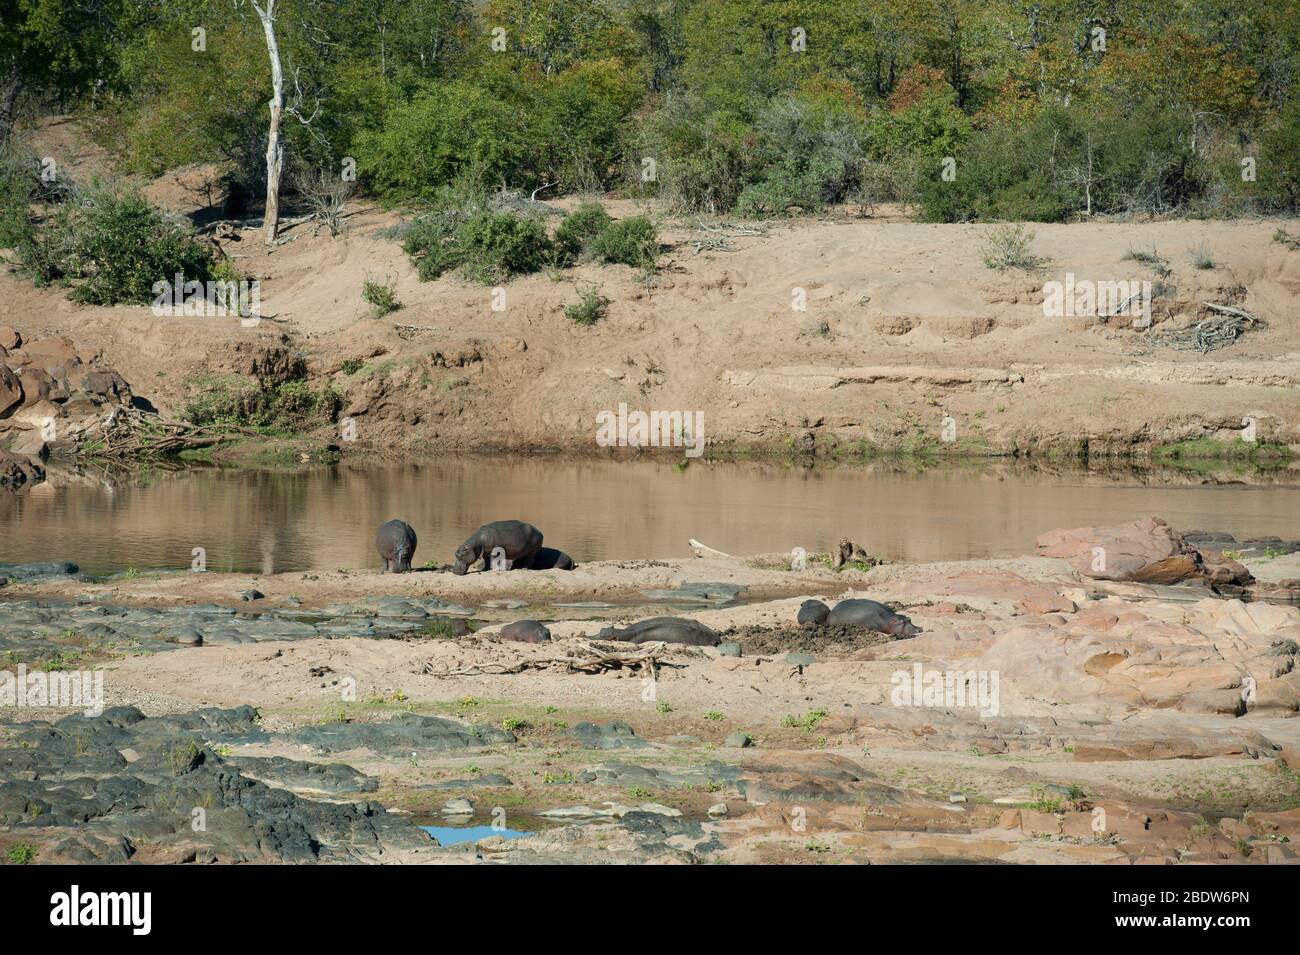 Hippopotame, Hippopotamus amphibius, vulnérable, gousse reposant sur un banc de sable au bord de la rivière, Parc national Kruger, province de Mpumalanga, Afrique du Sud, Afrique Banque D'Images